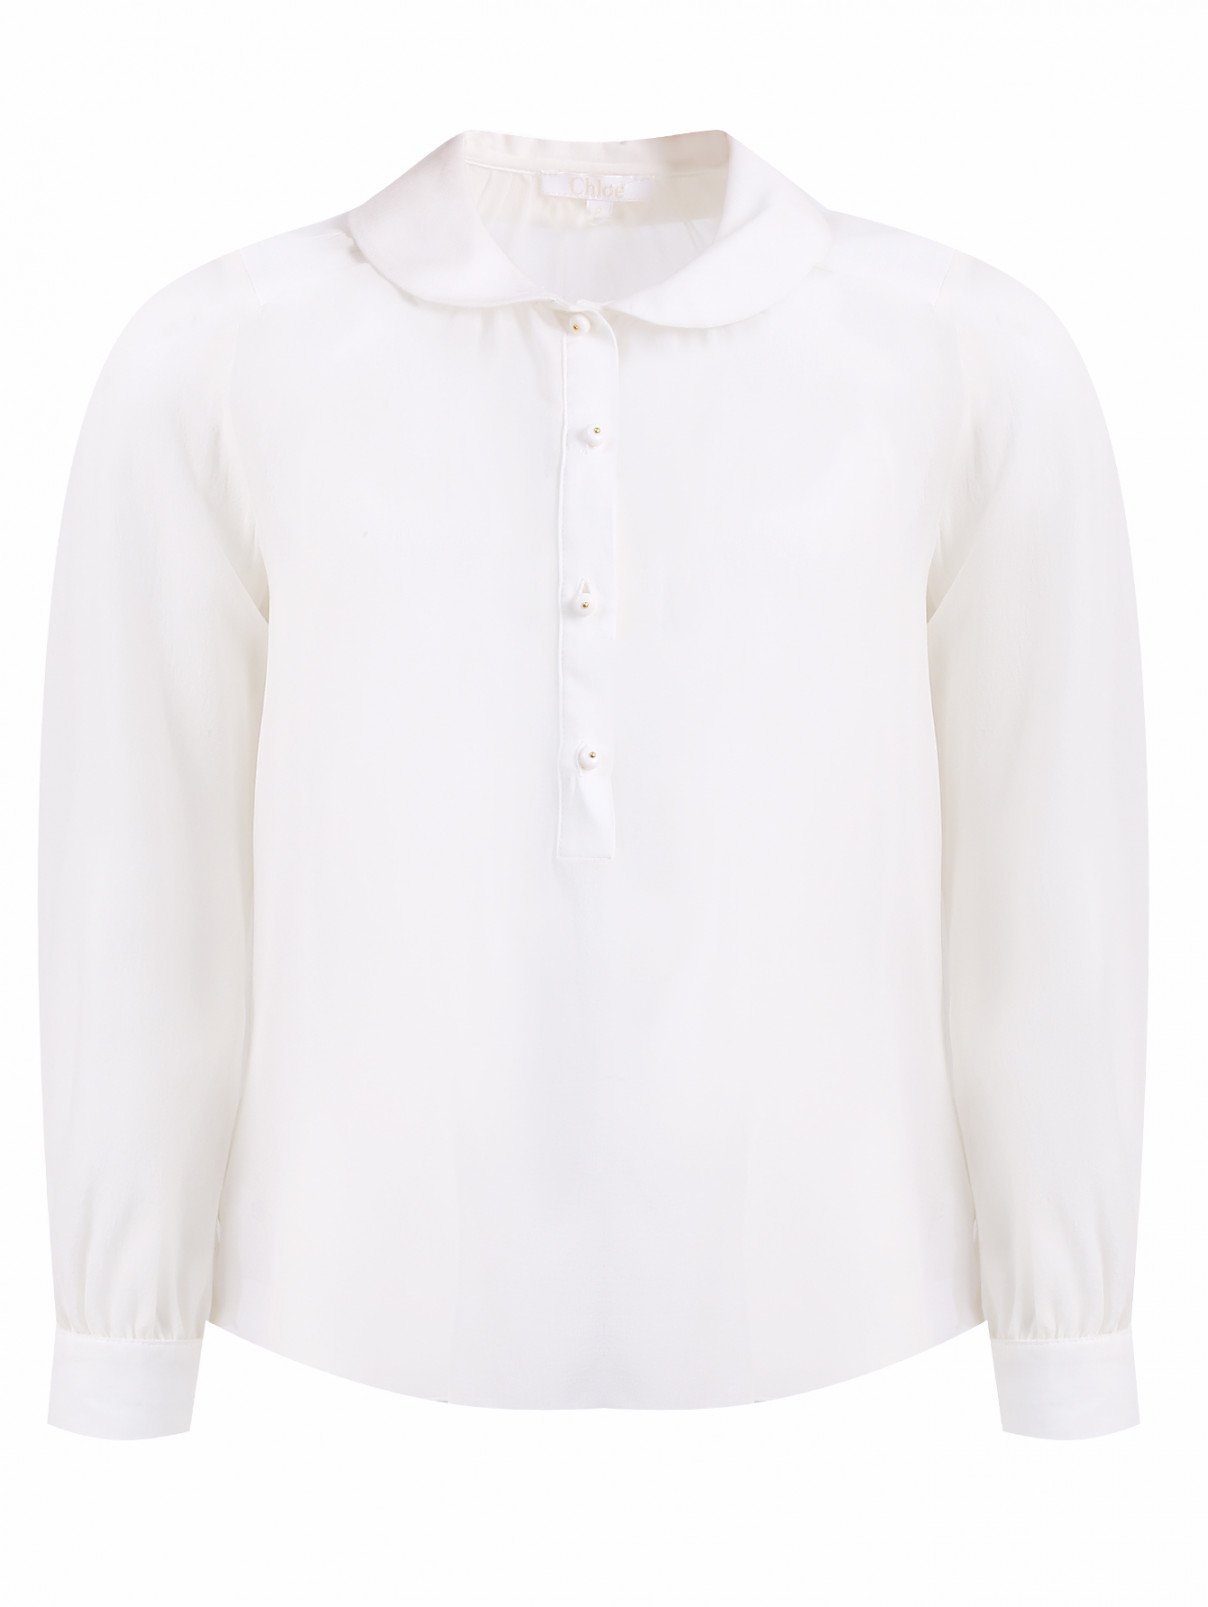 Комплект лонгслив и блуза из шелка Chloe  –  Общий вид  – Цвет:  Белый